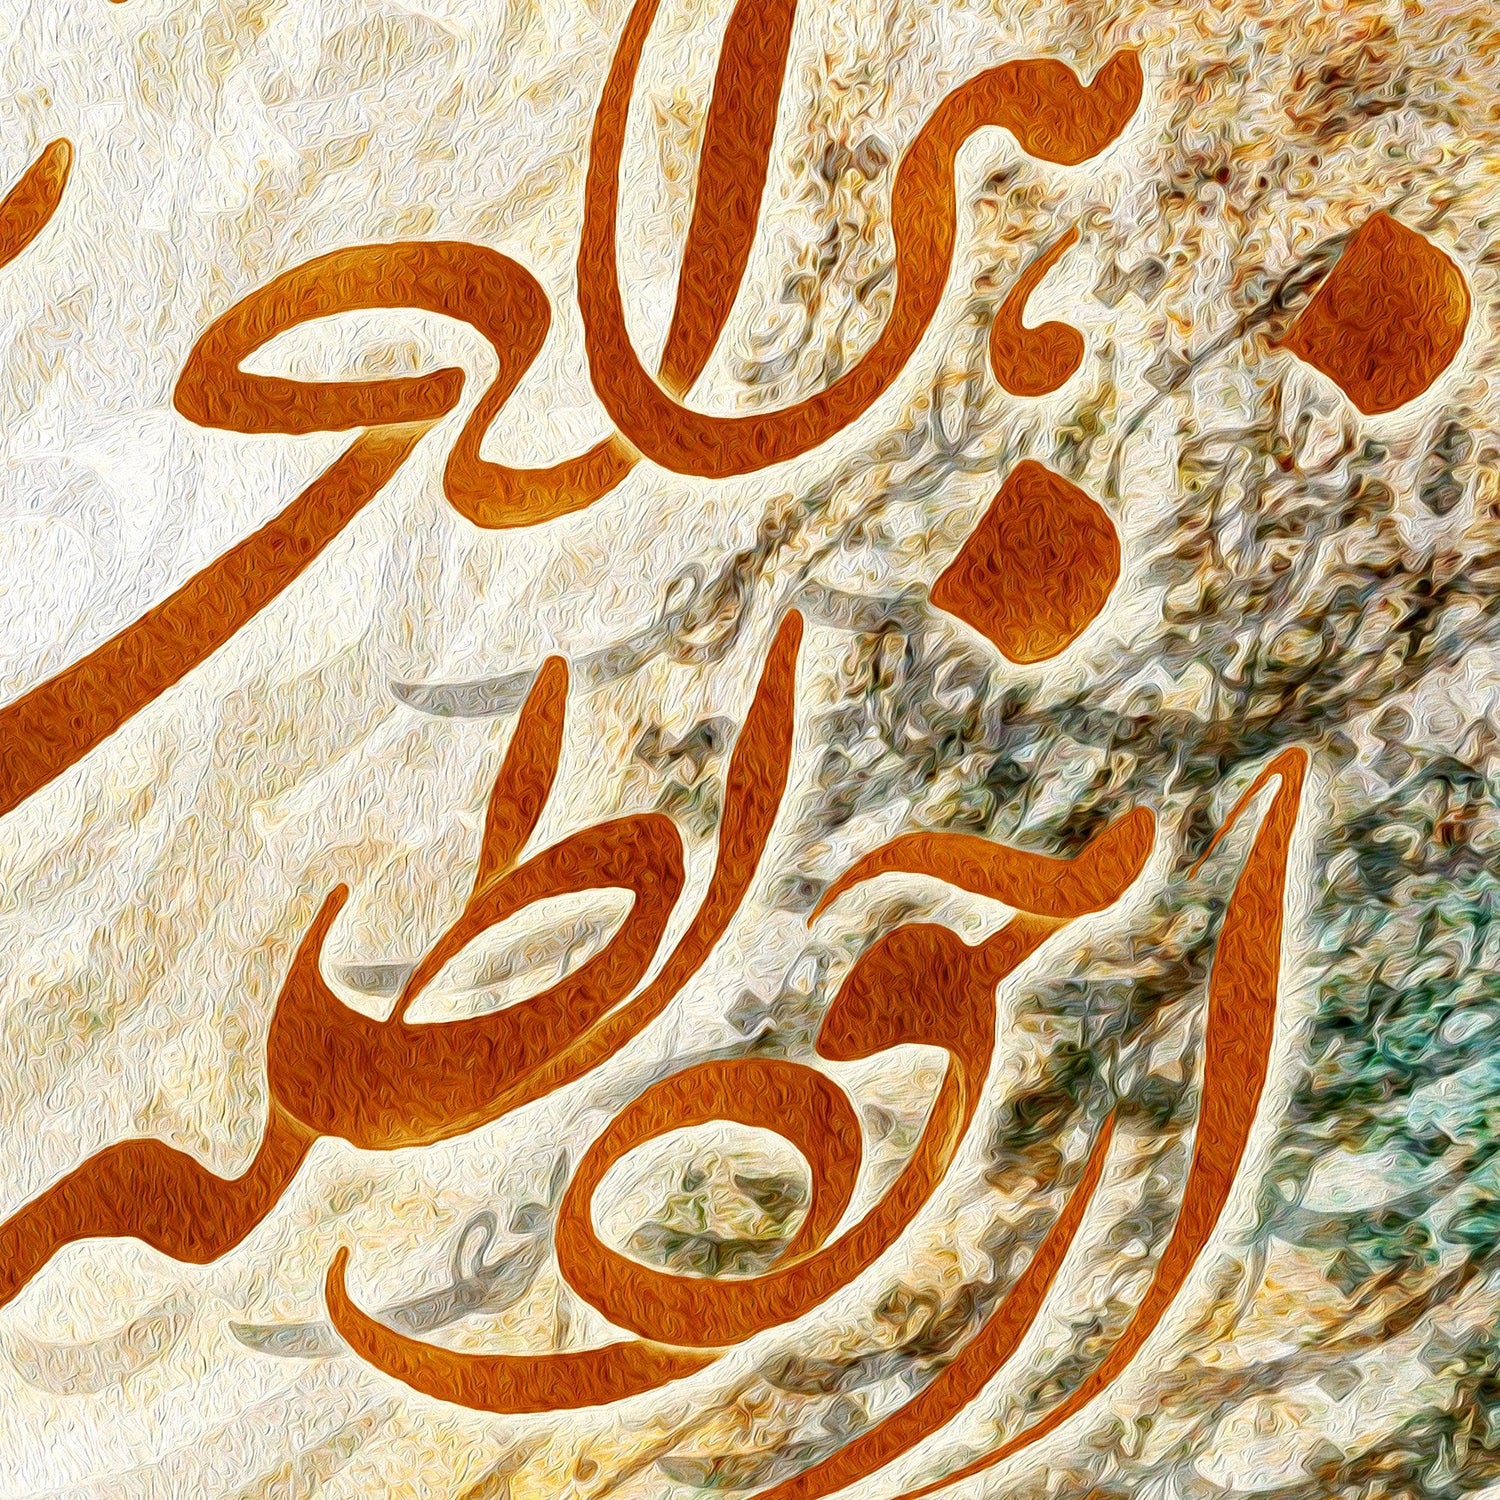 Look Inside Yourself | Persian Wall Art | Persian Home Wall Decor - ORIAVI Persian Art, persian artwork for sale, persian calligraphy, persian calligraphy wall art, persian mix media wall art, persian painting, persian wall art